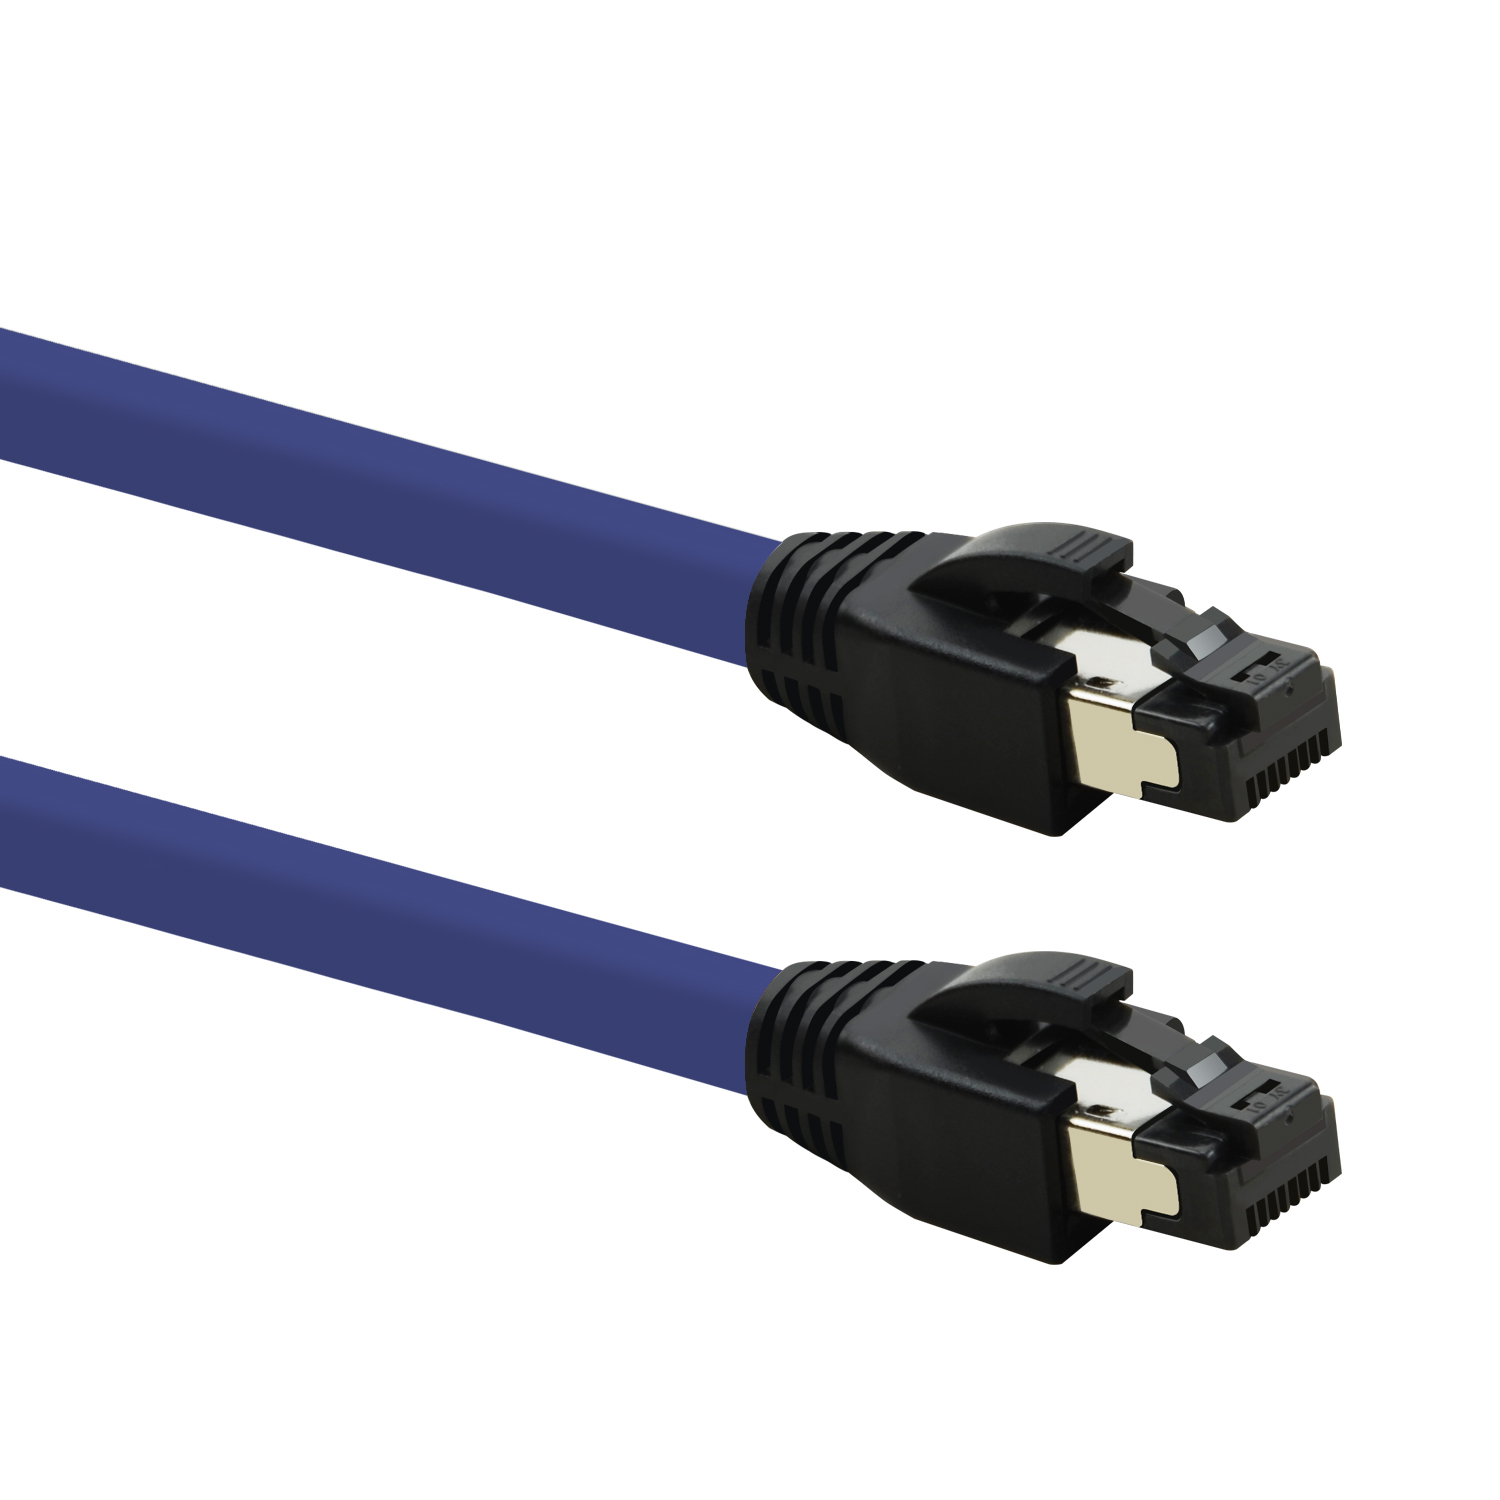 TPFNET 3m Patchkabel / 40 Netzwerkkabel, GBit, 3 violett, Netzwerkkabel m S/FTP